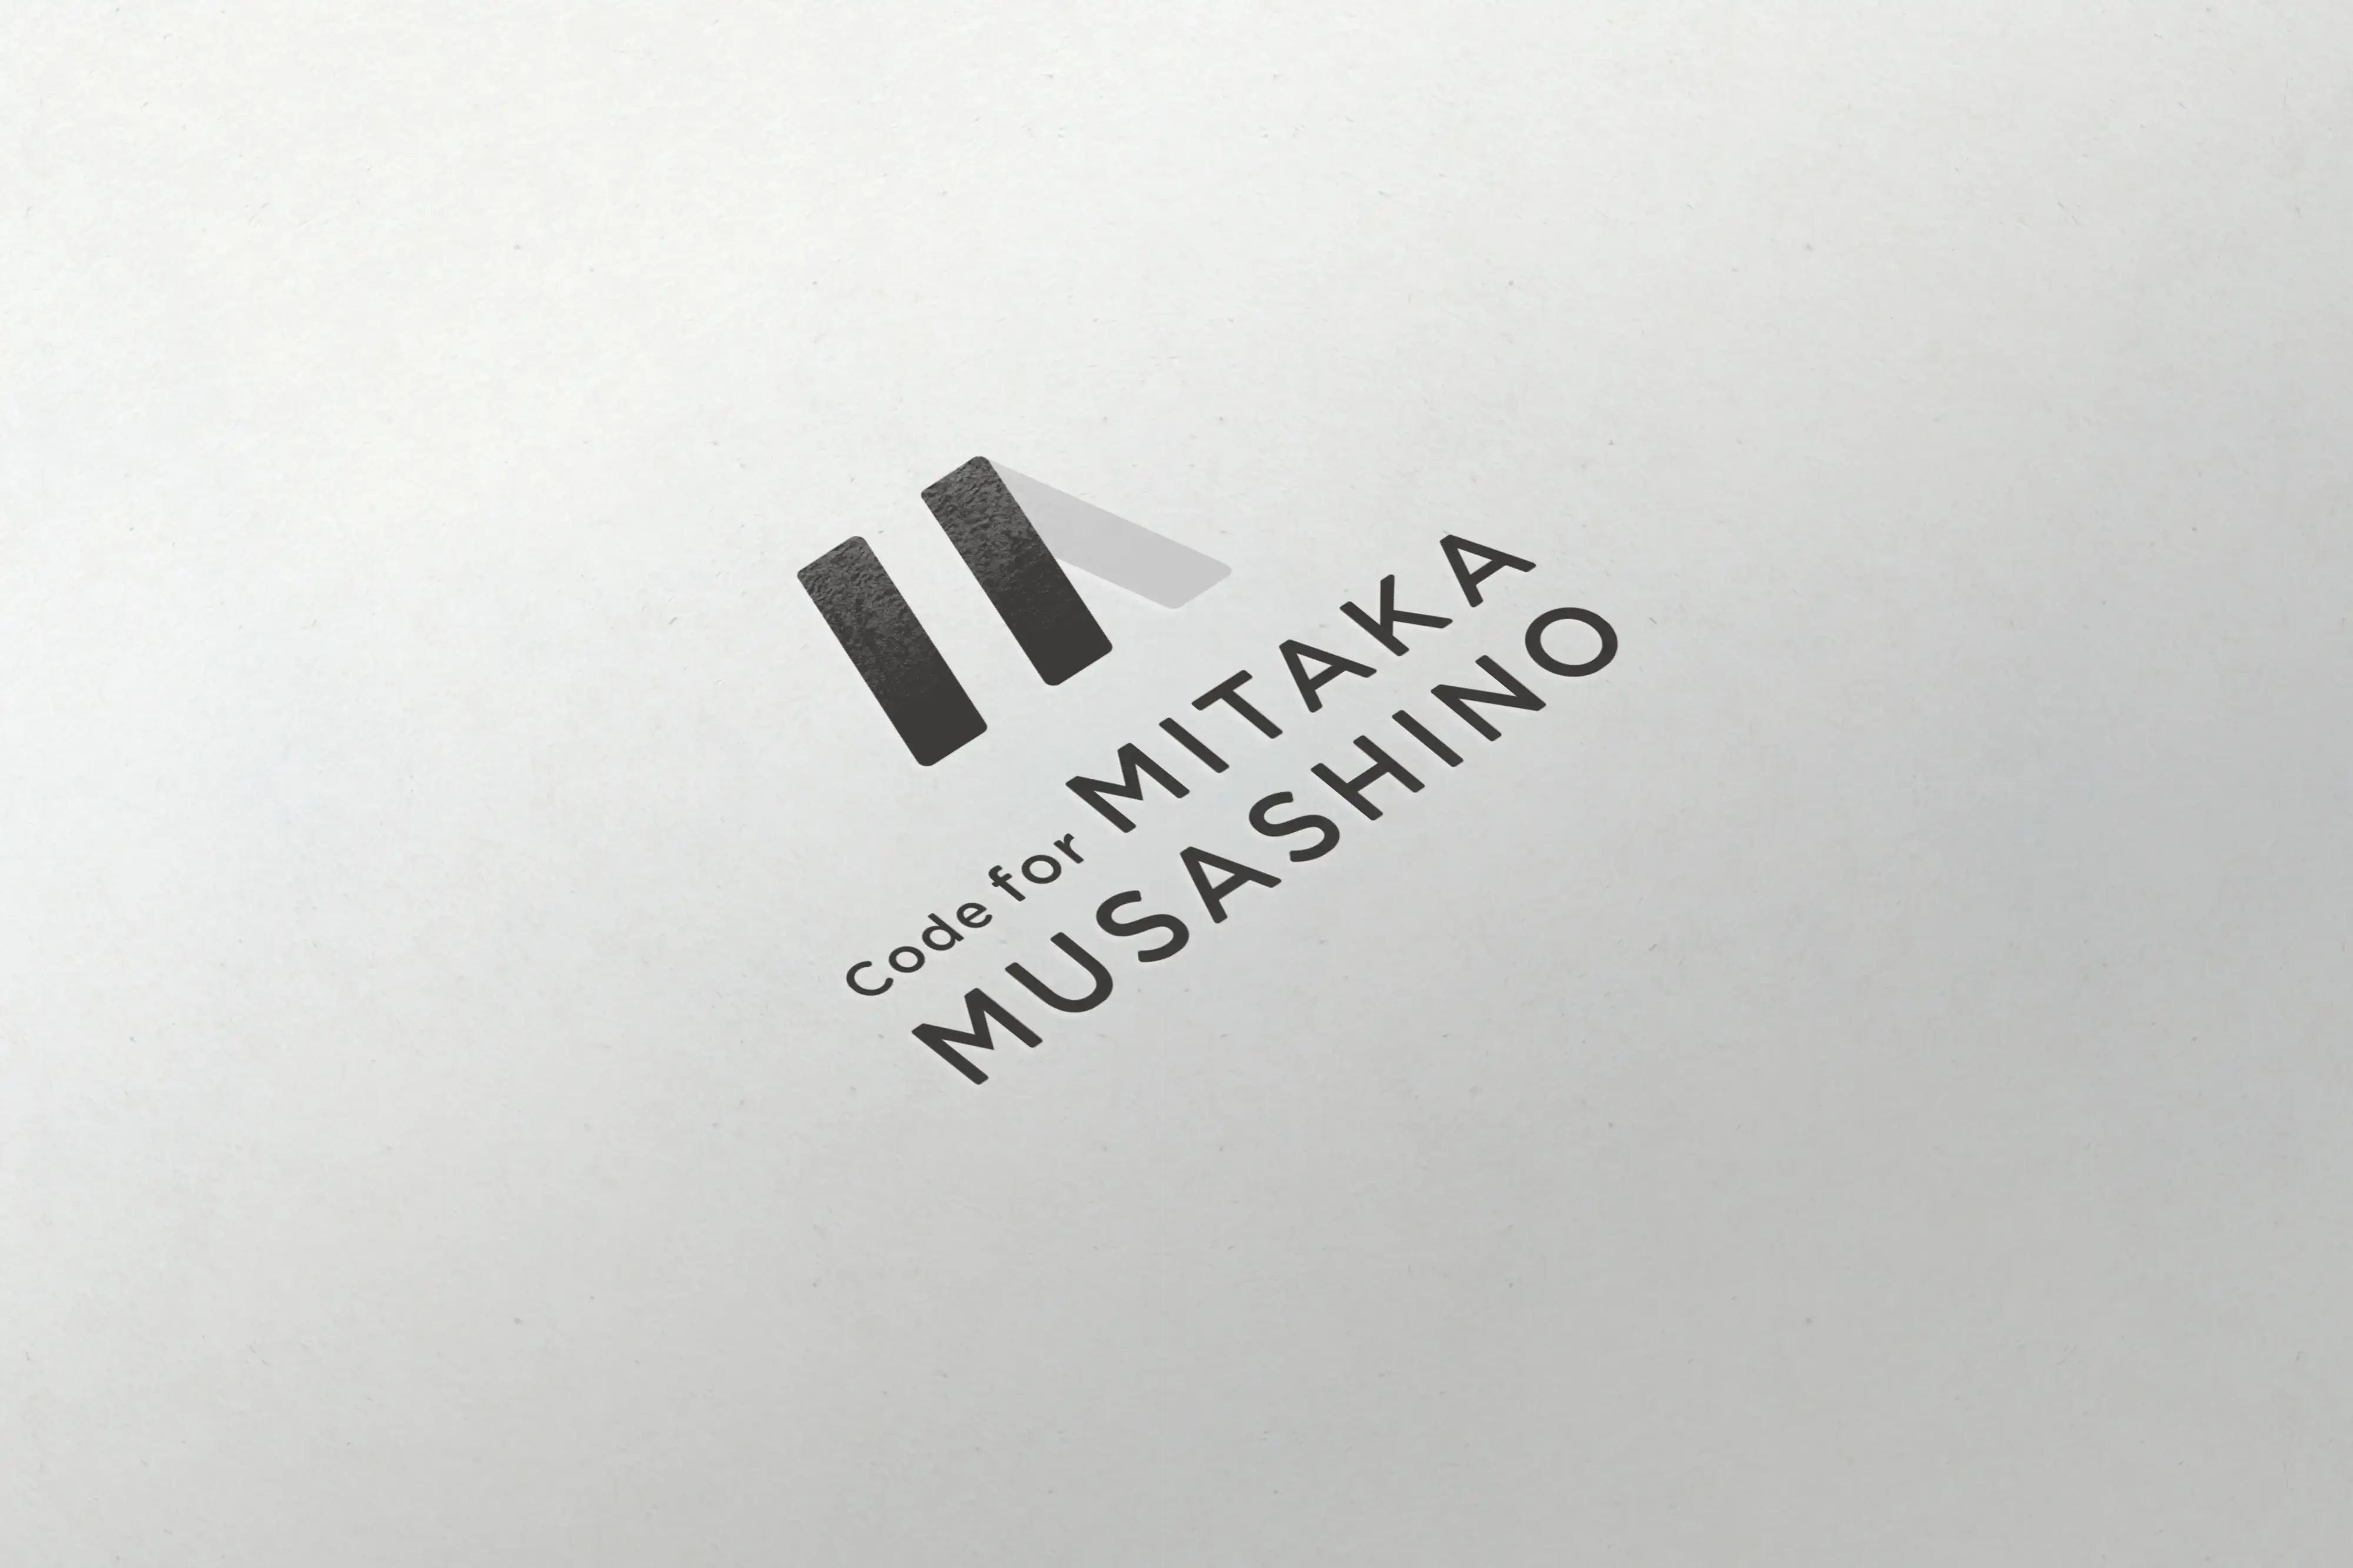 Code for MITAKA MUSASHINOスクリーンショット